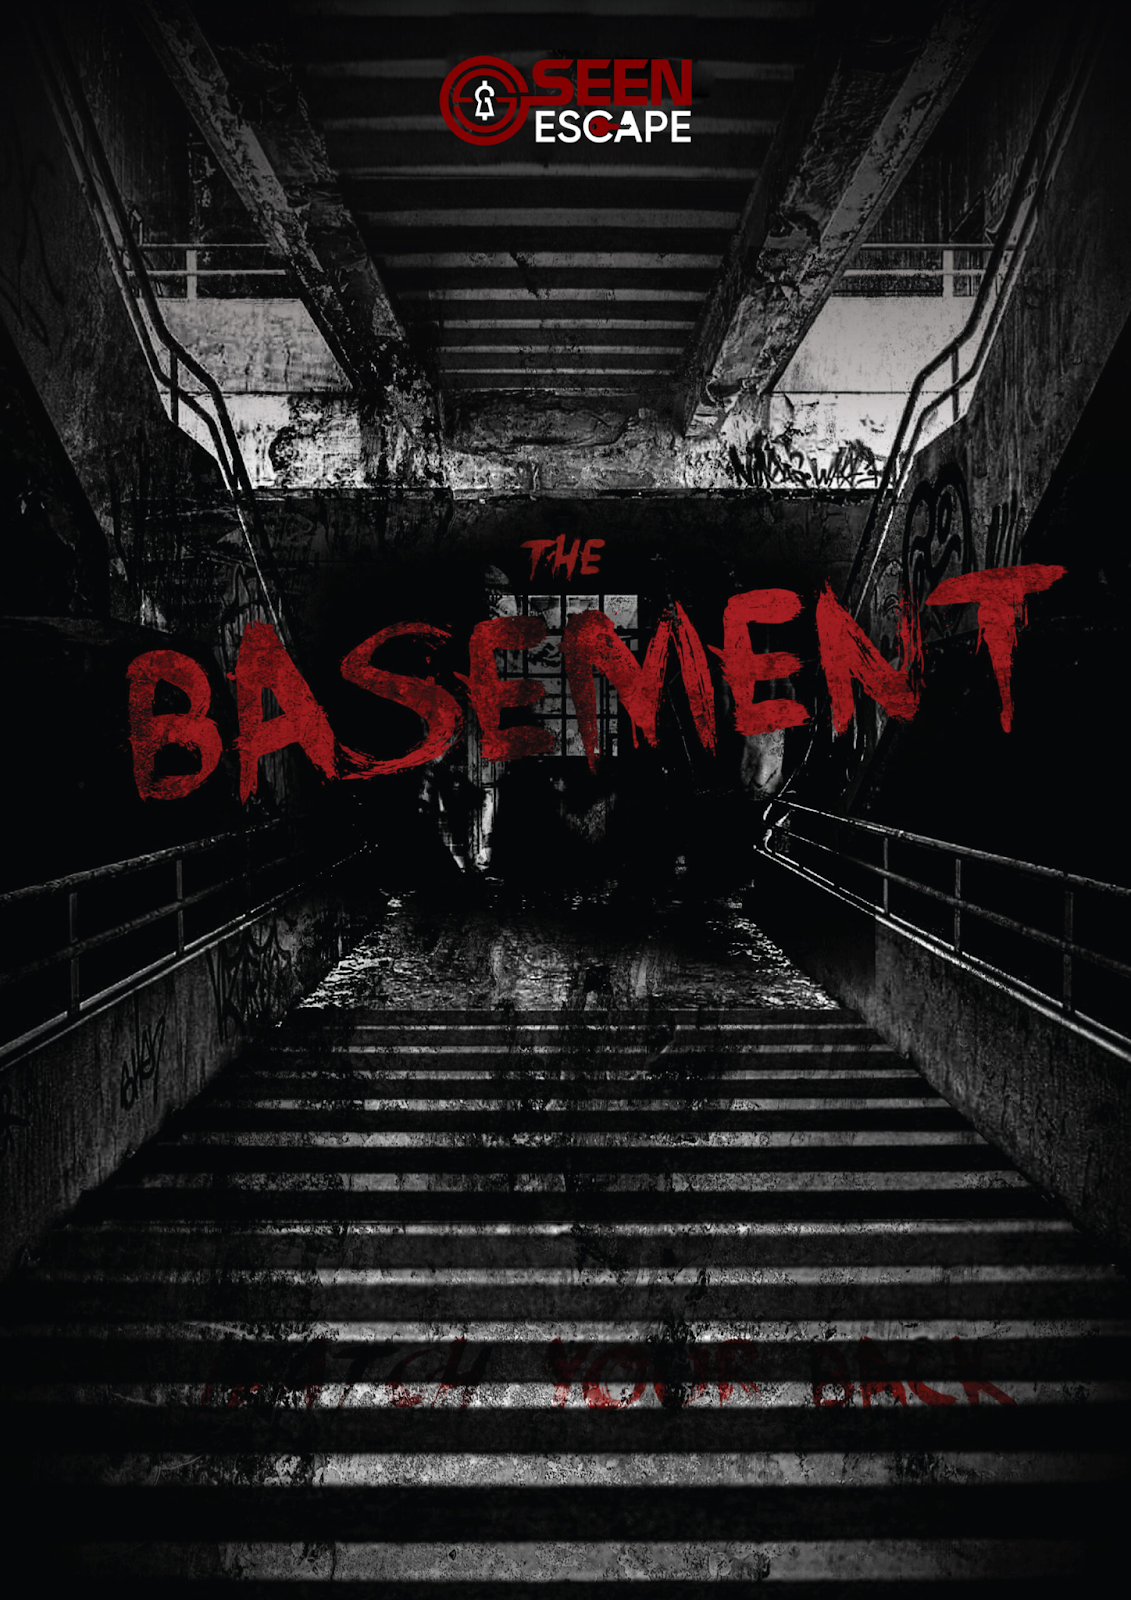 Căn hầm tăm tối - The Basement